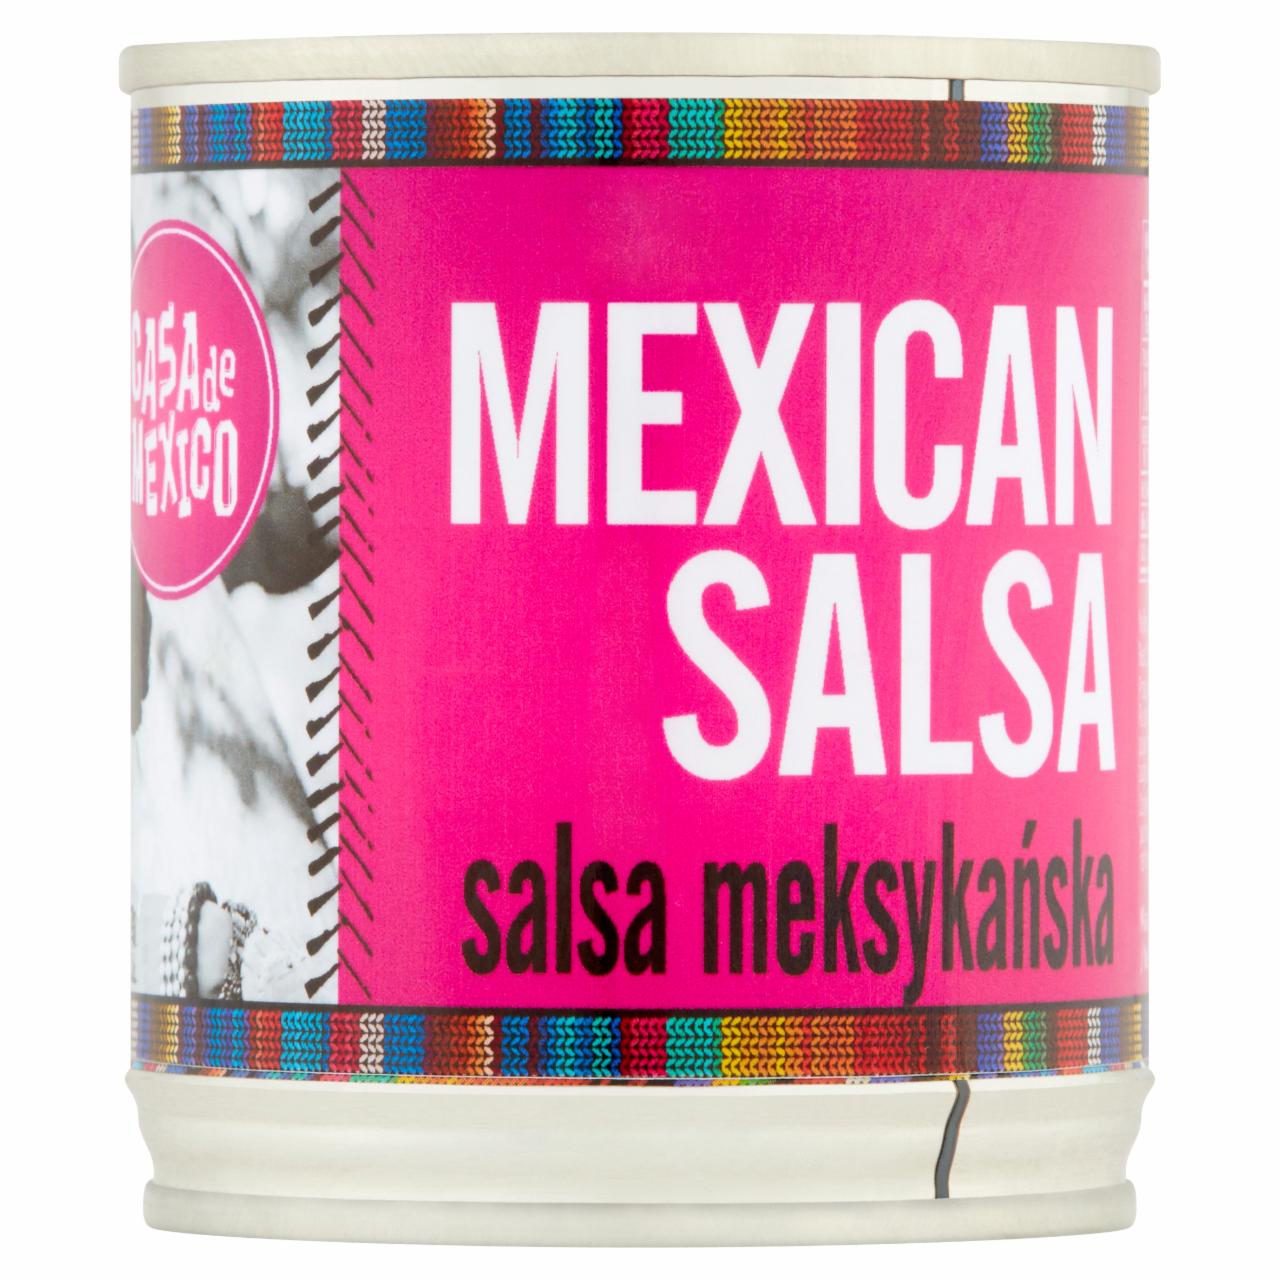 Zdjęcia - Casa de Mexico Salsa meksykańska 215 g